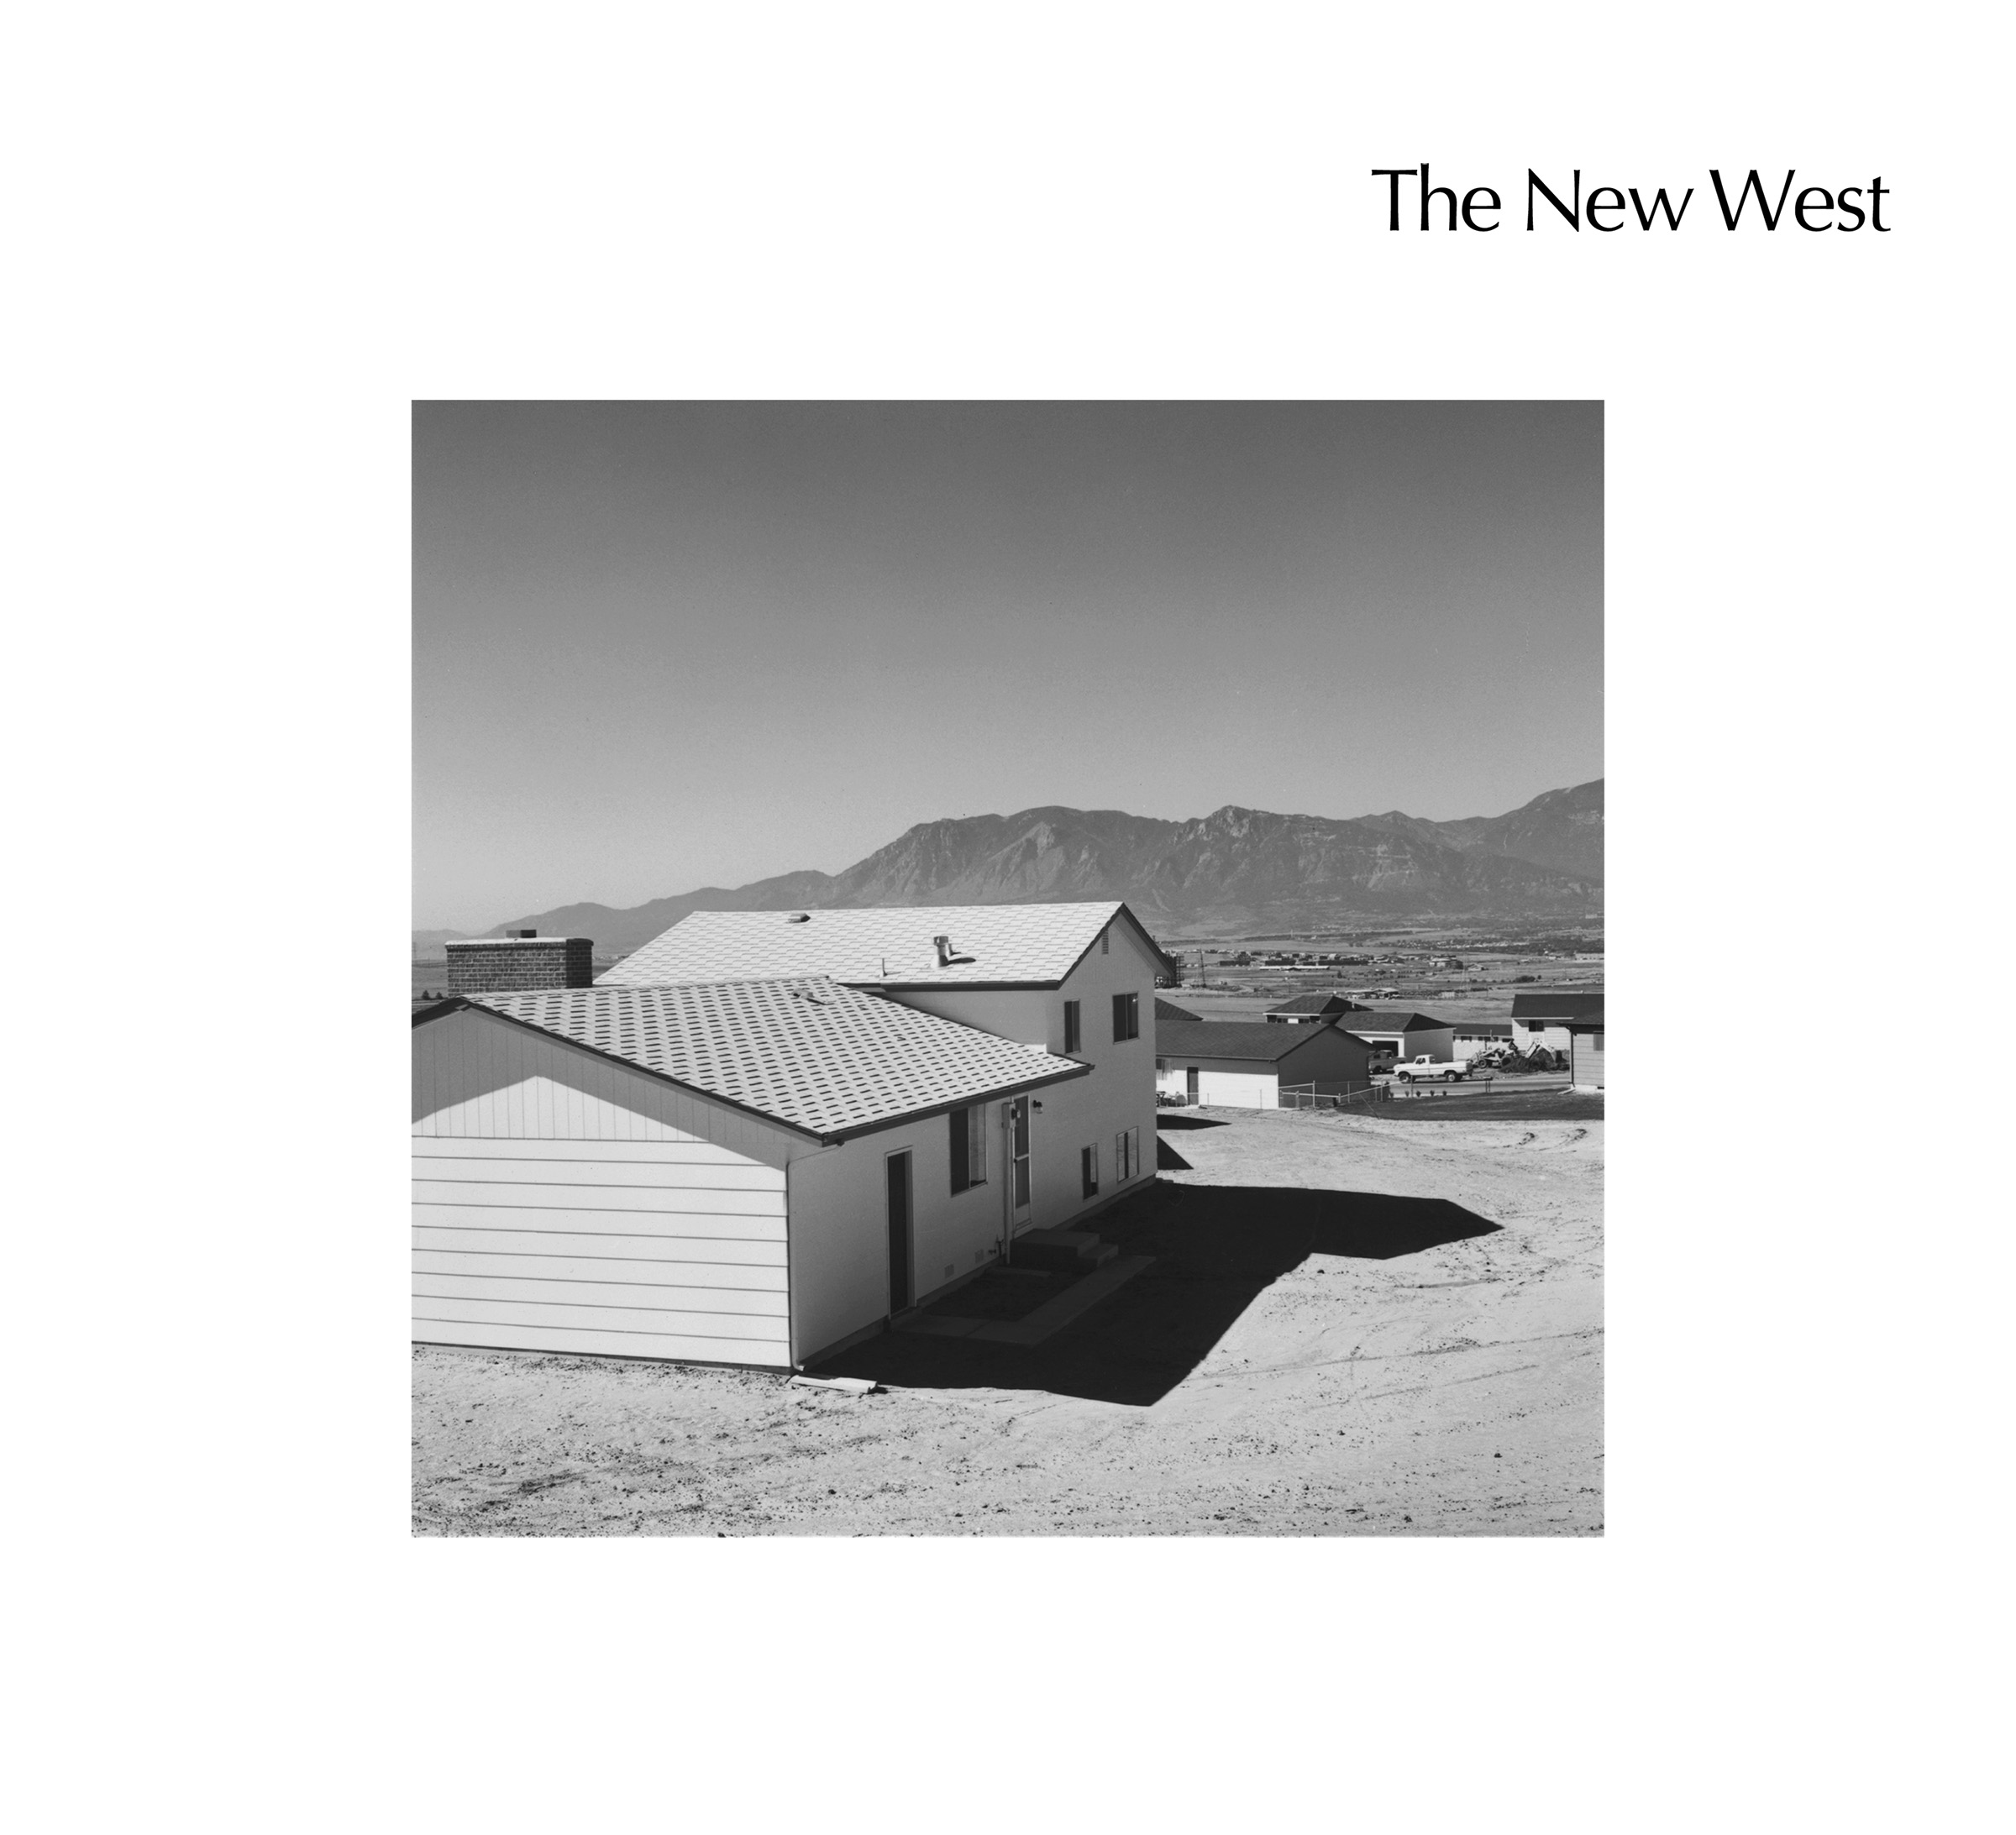 Robert Adams, The New West, Steidl, 2015